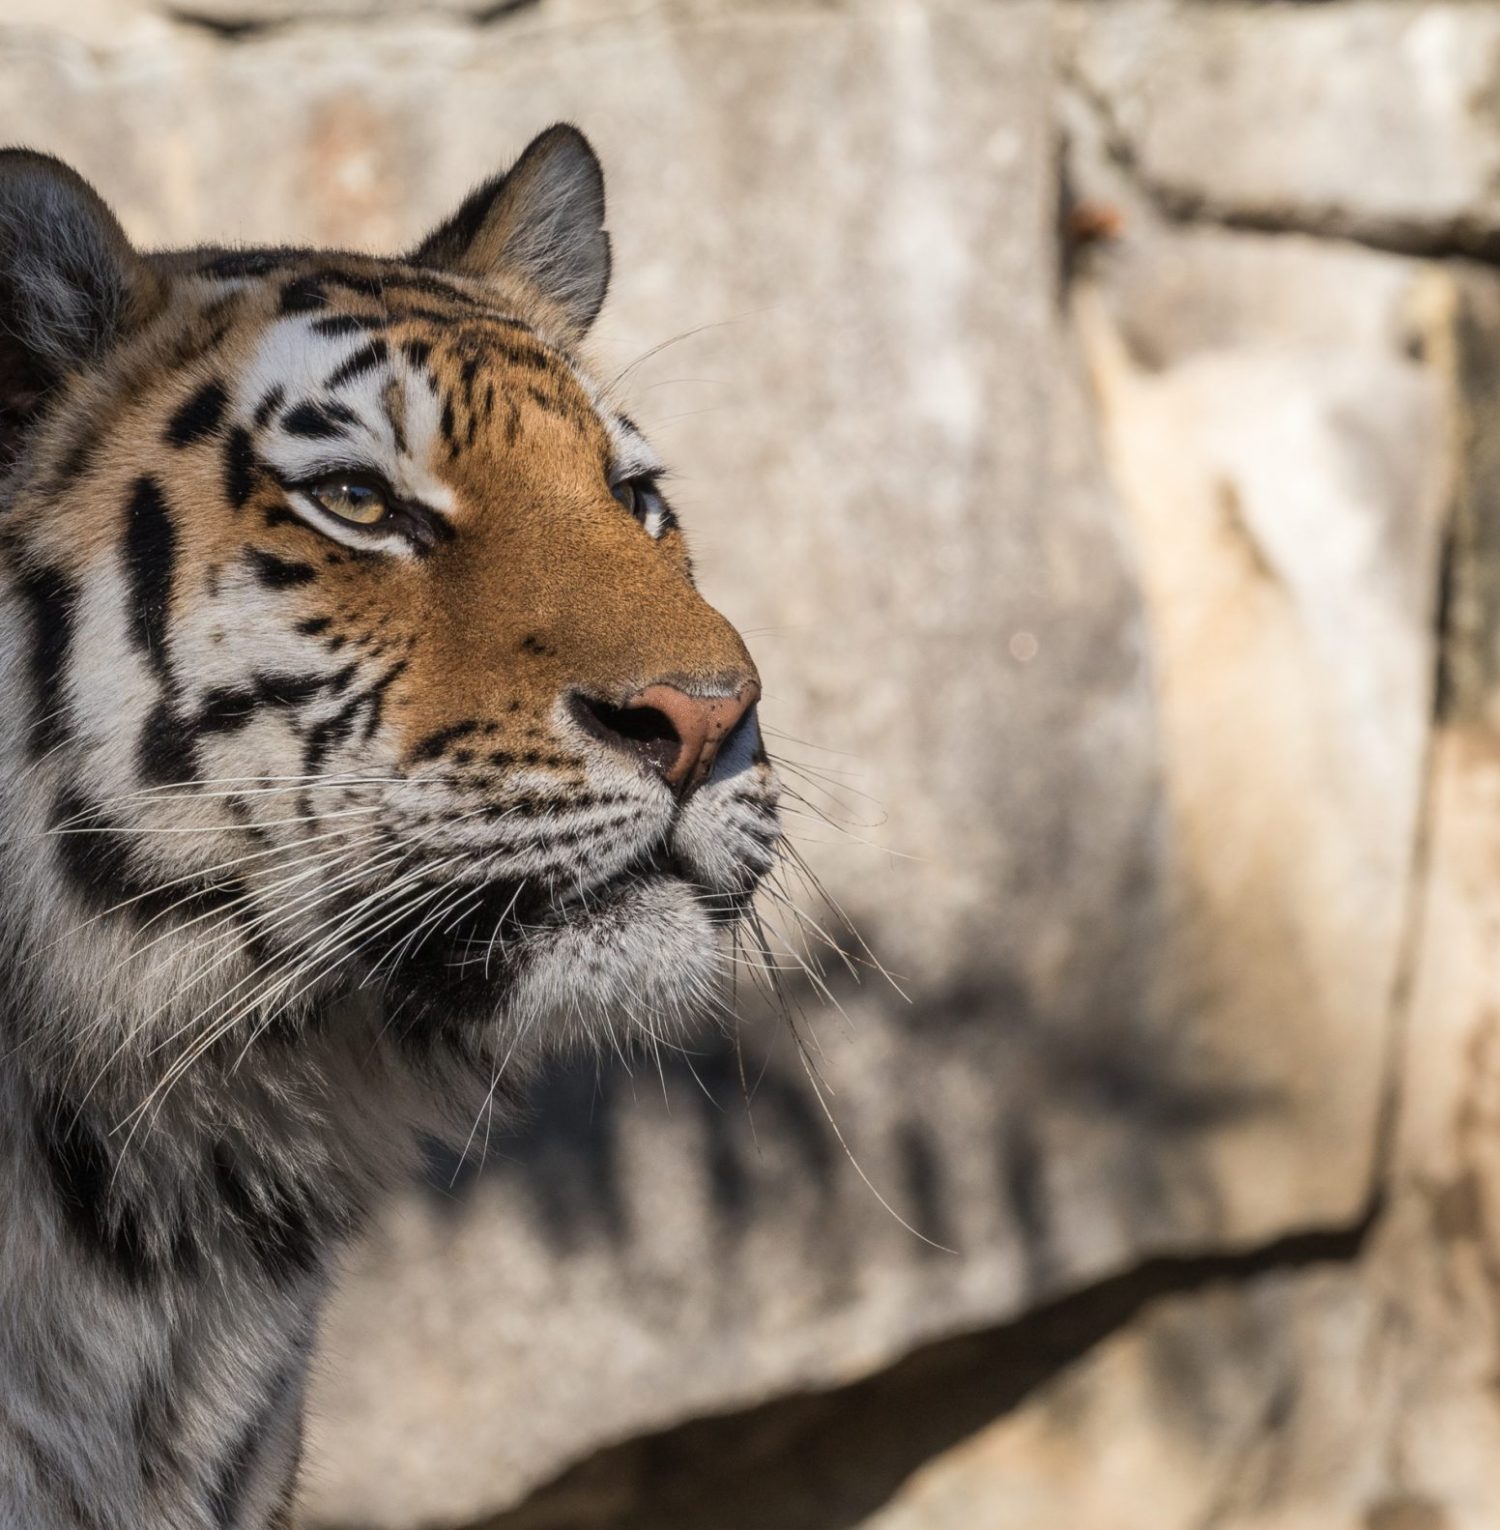 การอนุรักษ์เพื่ออนาคตของ “เสือ – เจ้าแห่งพงไพร”